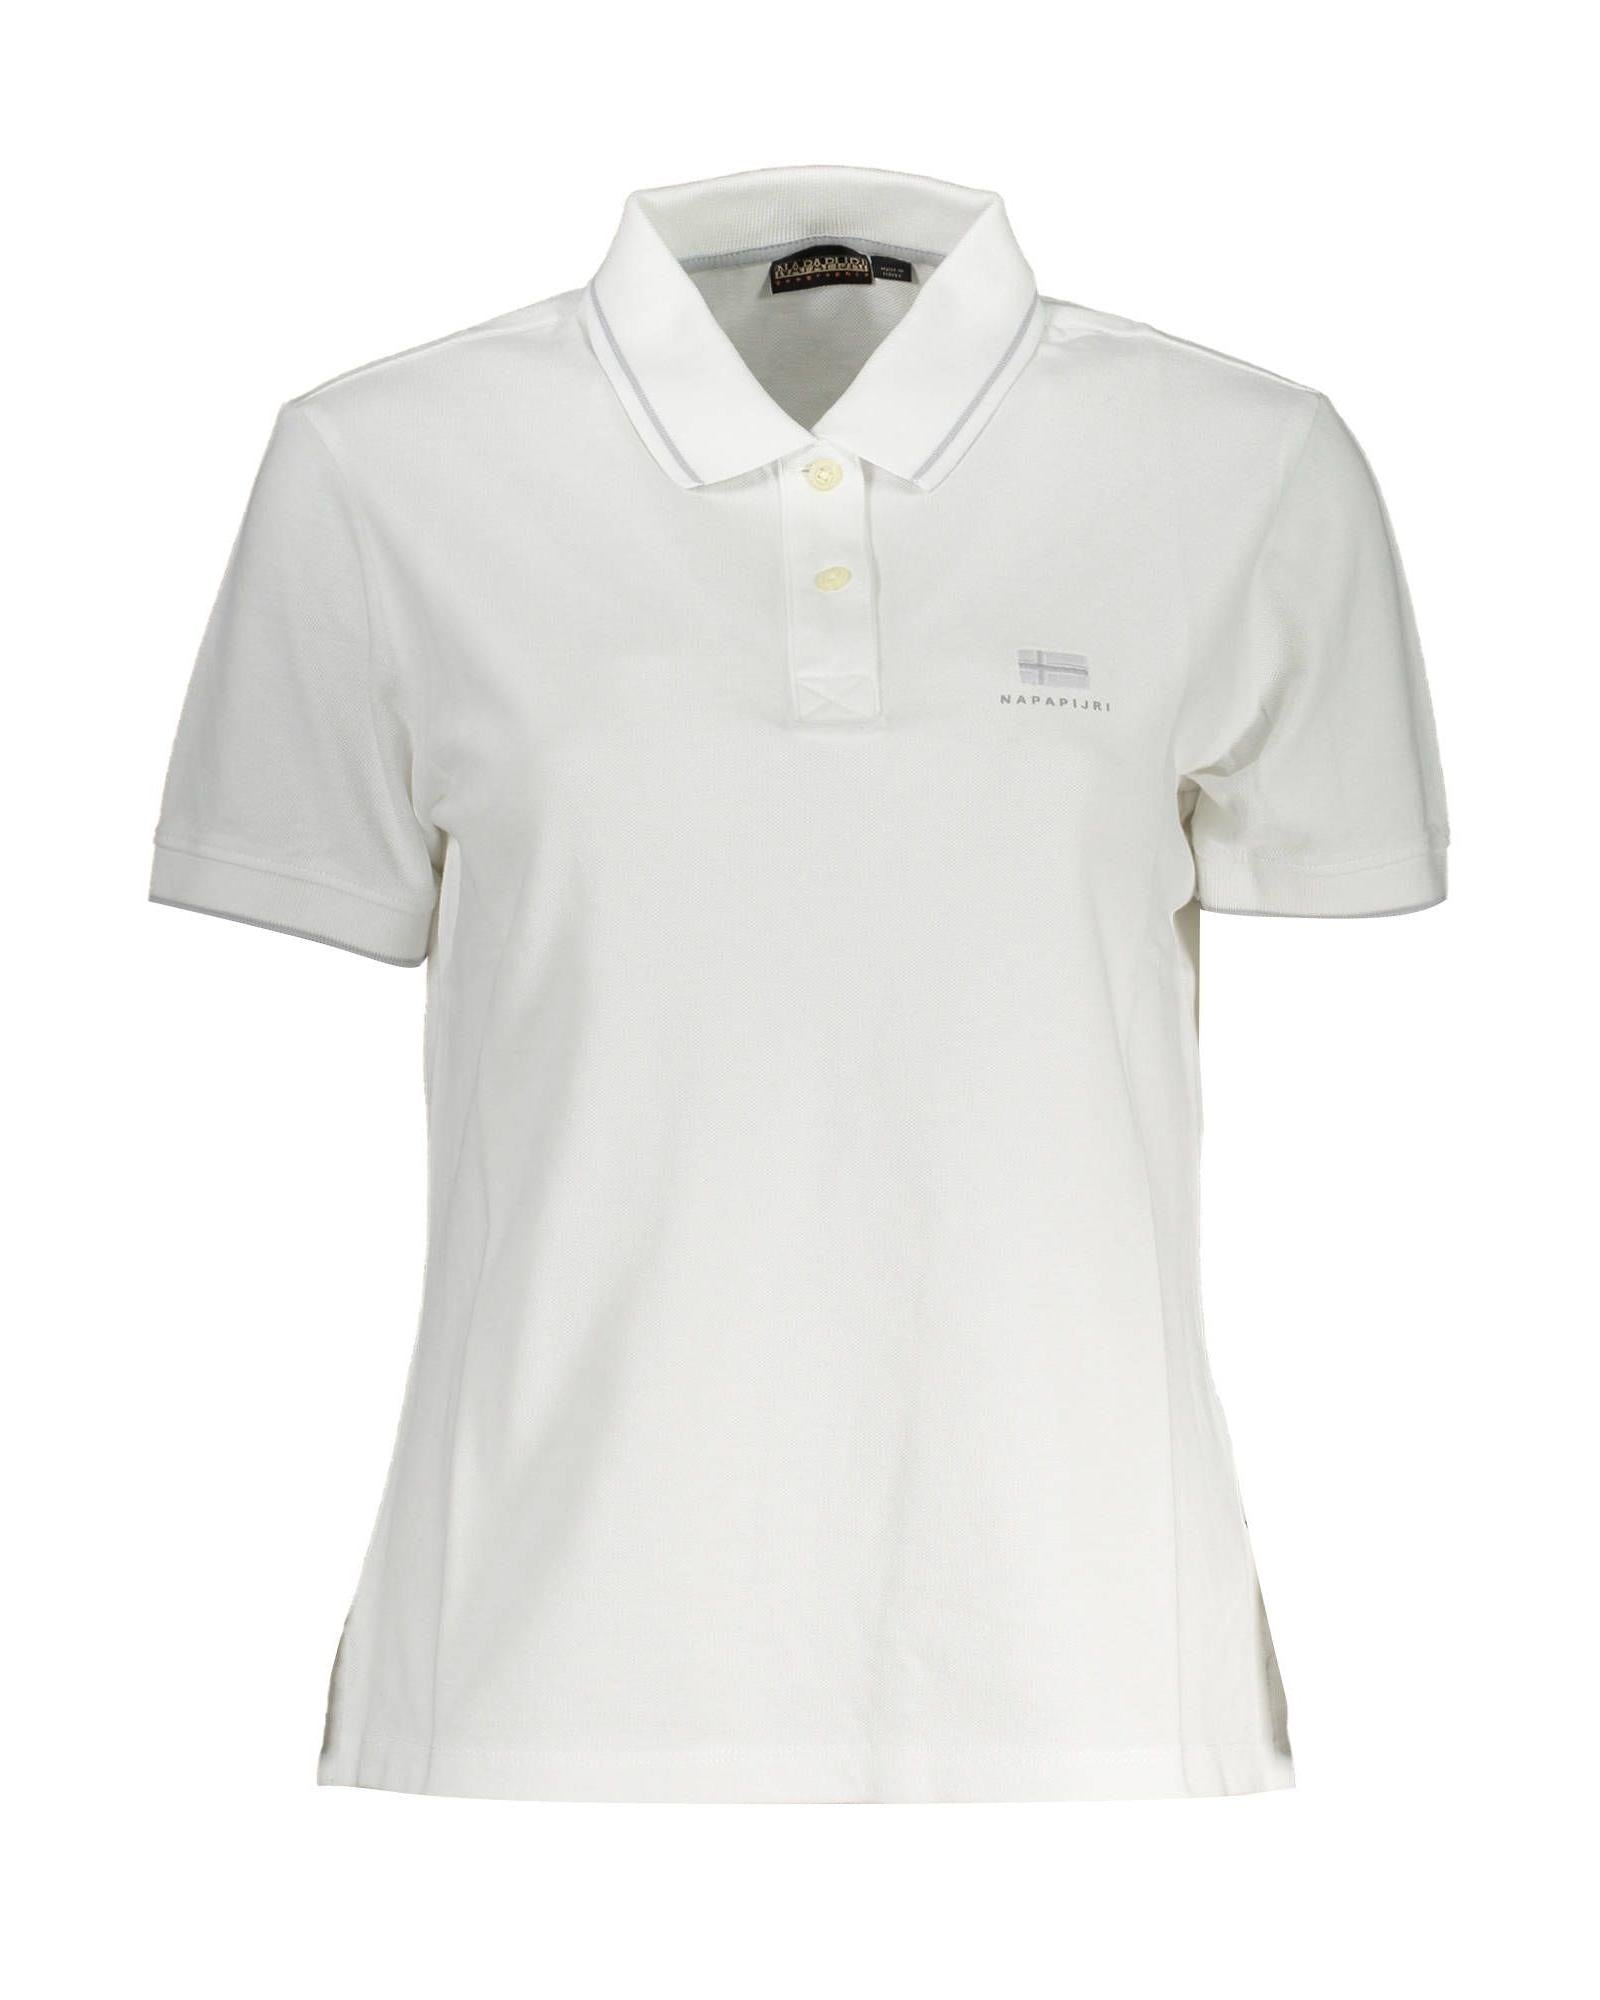 Men's White Cotton Polo Shirt - L